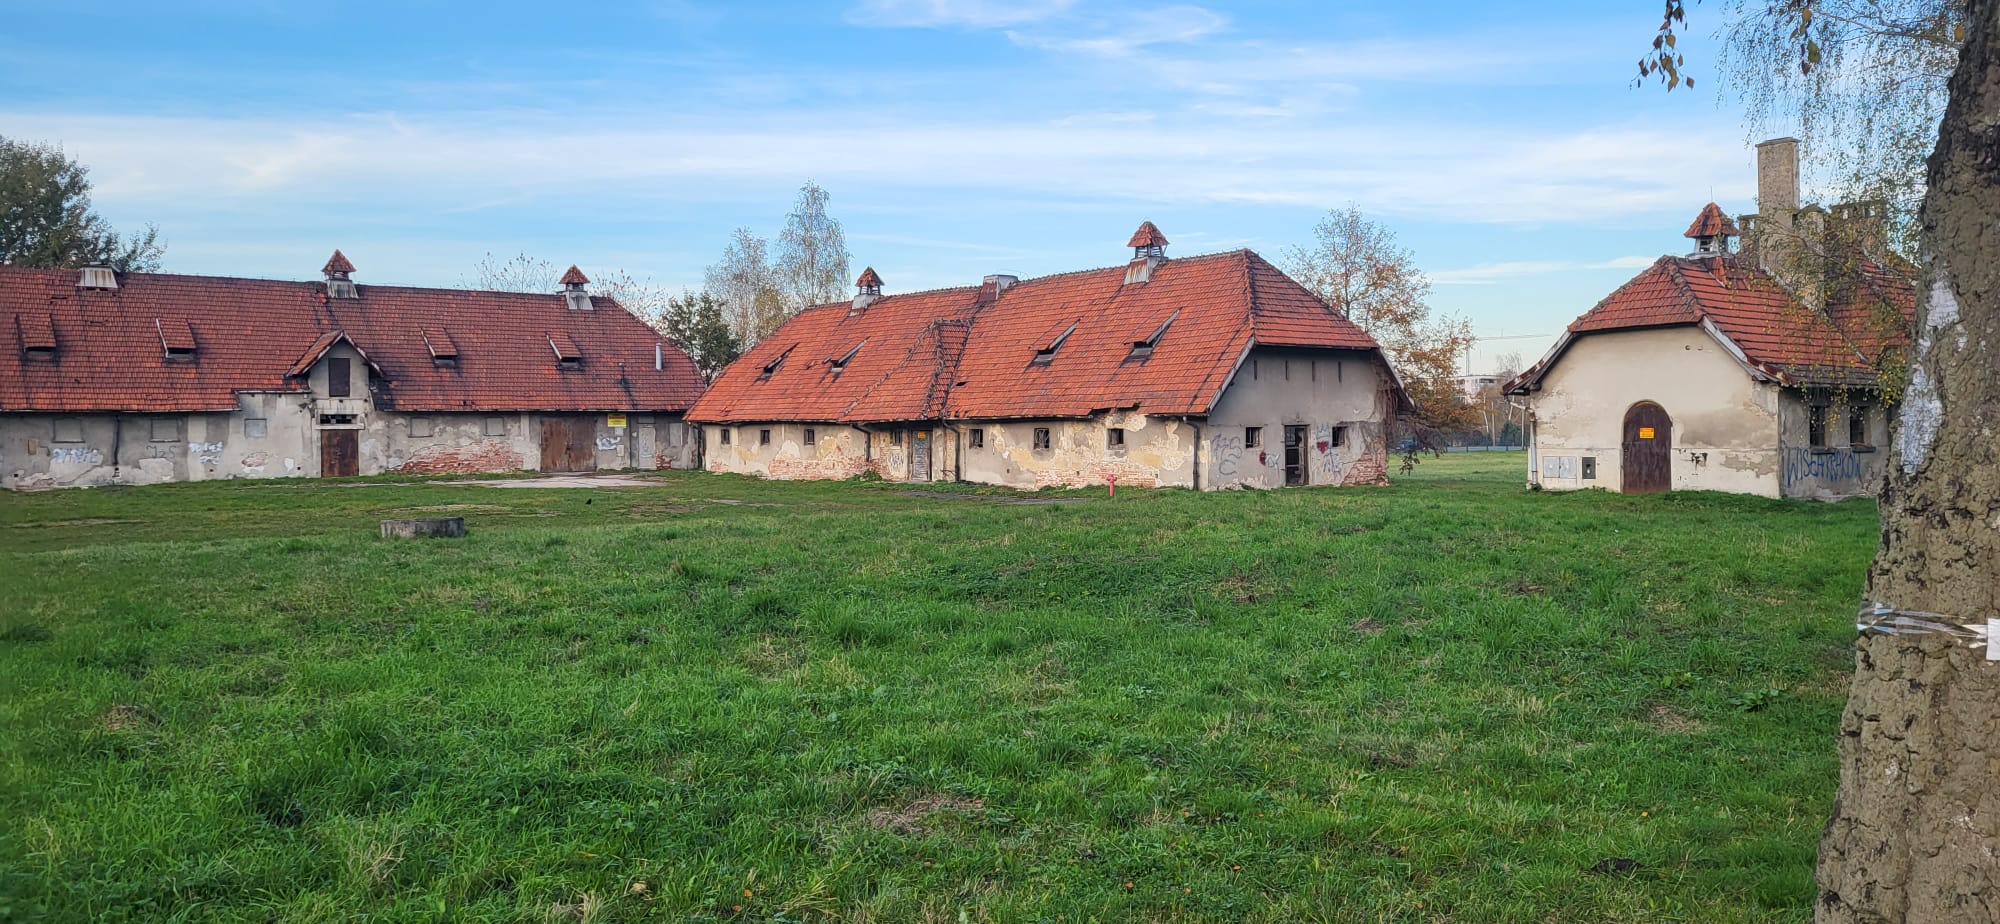 widok budynków folwarcznych na terenie parku w Krakowie-Kobierzynie